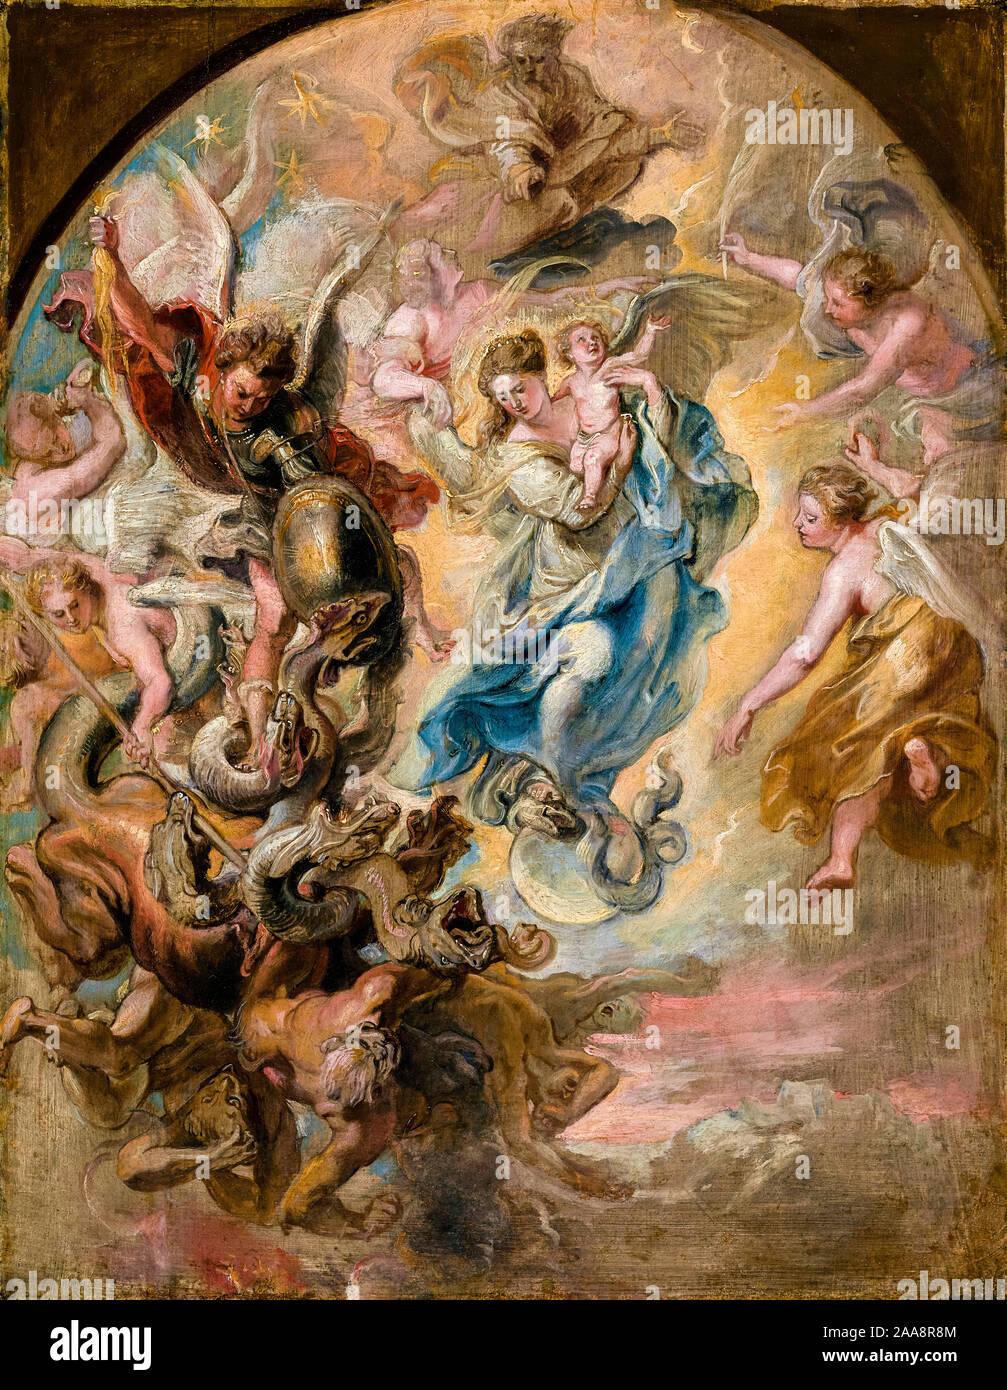 Peter Paul Rubens, La Vierge comme la femme de l'Apocalypse, peinture, 1623-1624 Banque D'Images